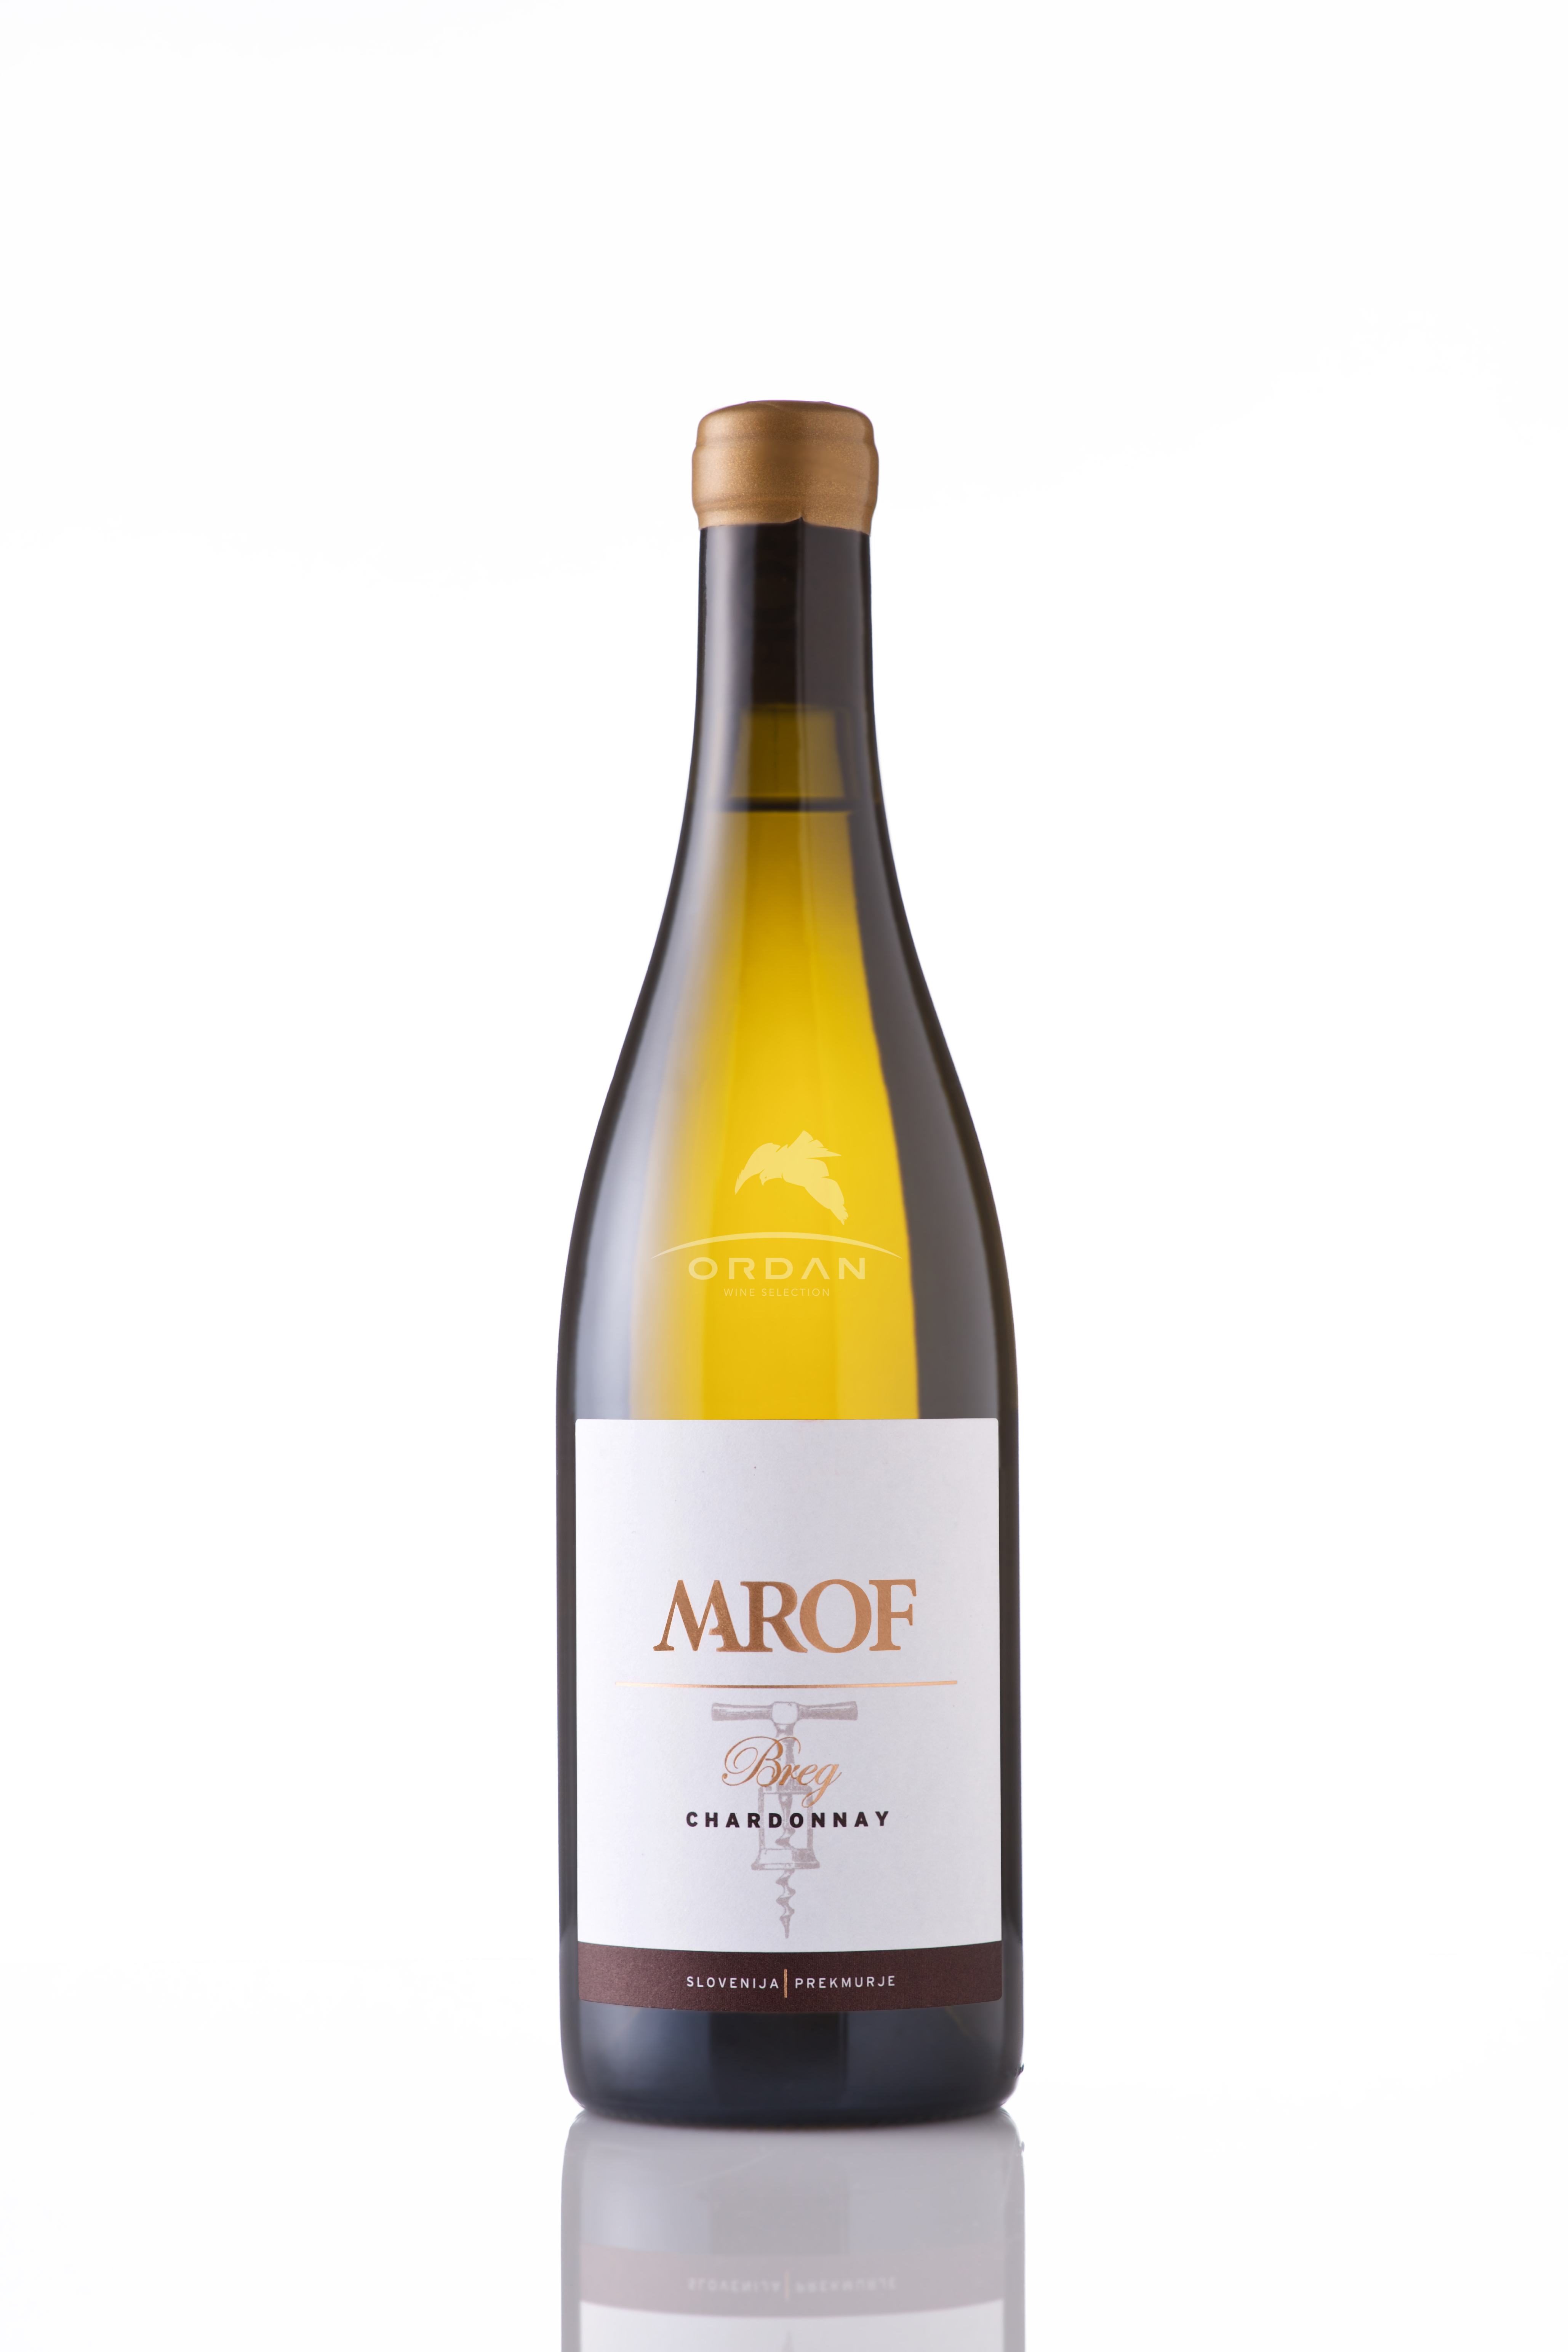 Marof – Breg Chardonnay